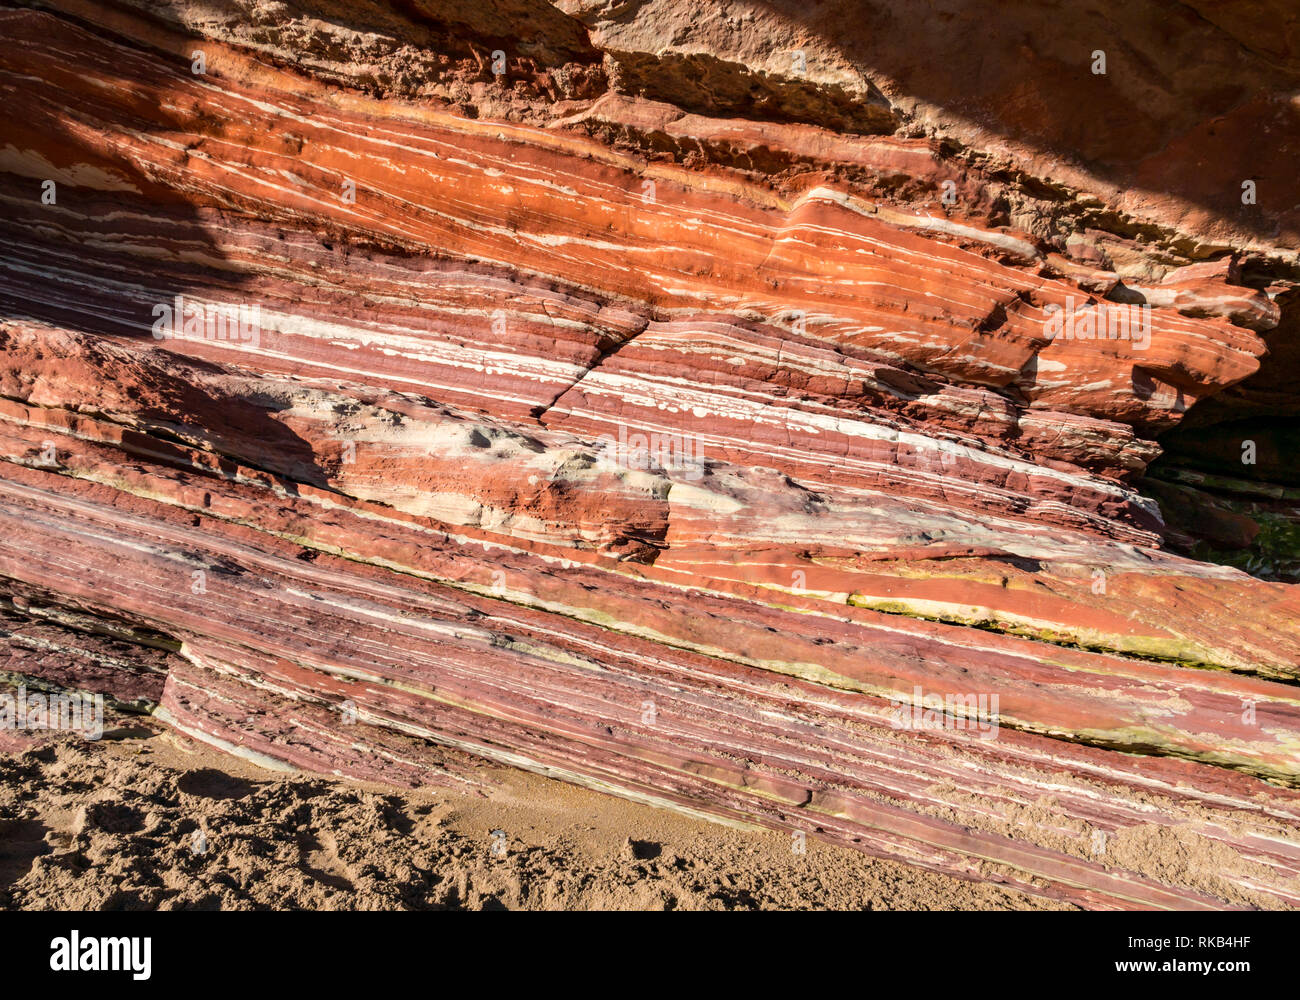 Devoniano capas sedimentarias estratos de roca arenisca en acantilado, hierro coloración, Pease Bay, Berwickshire, Escocia, Reino Unido Foto de stock